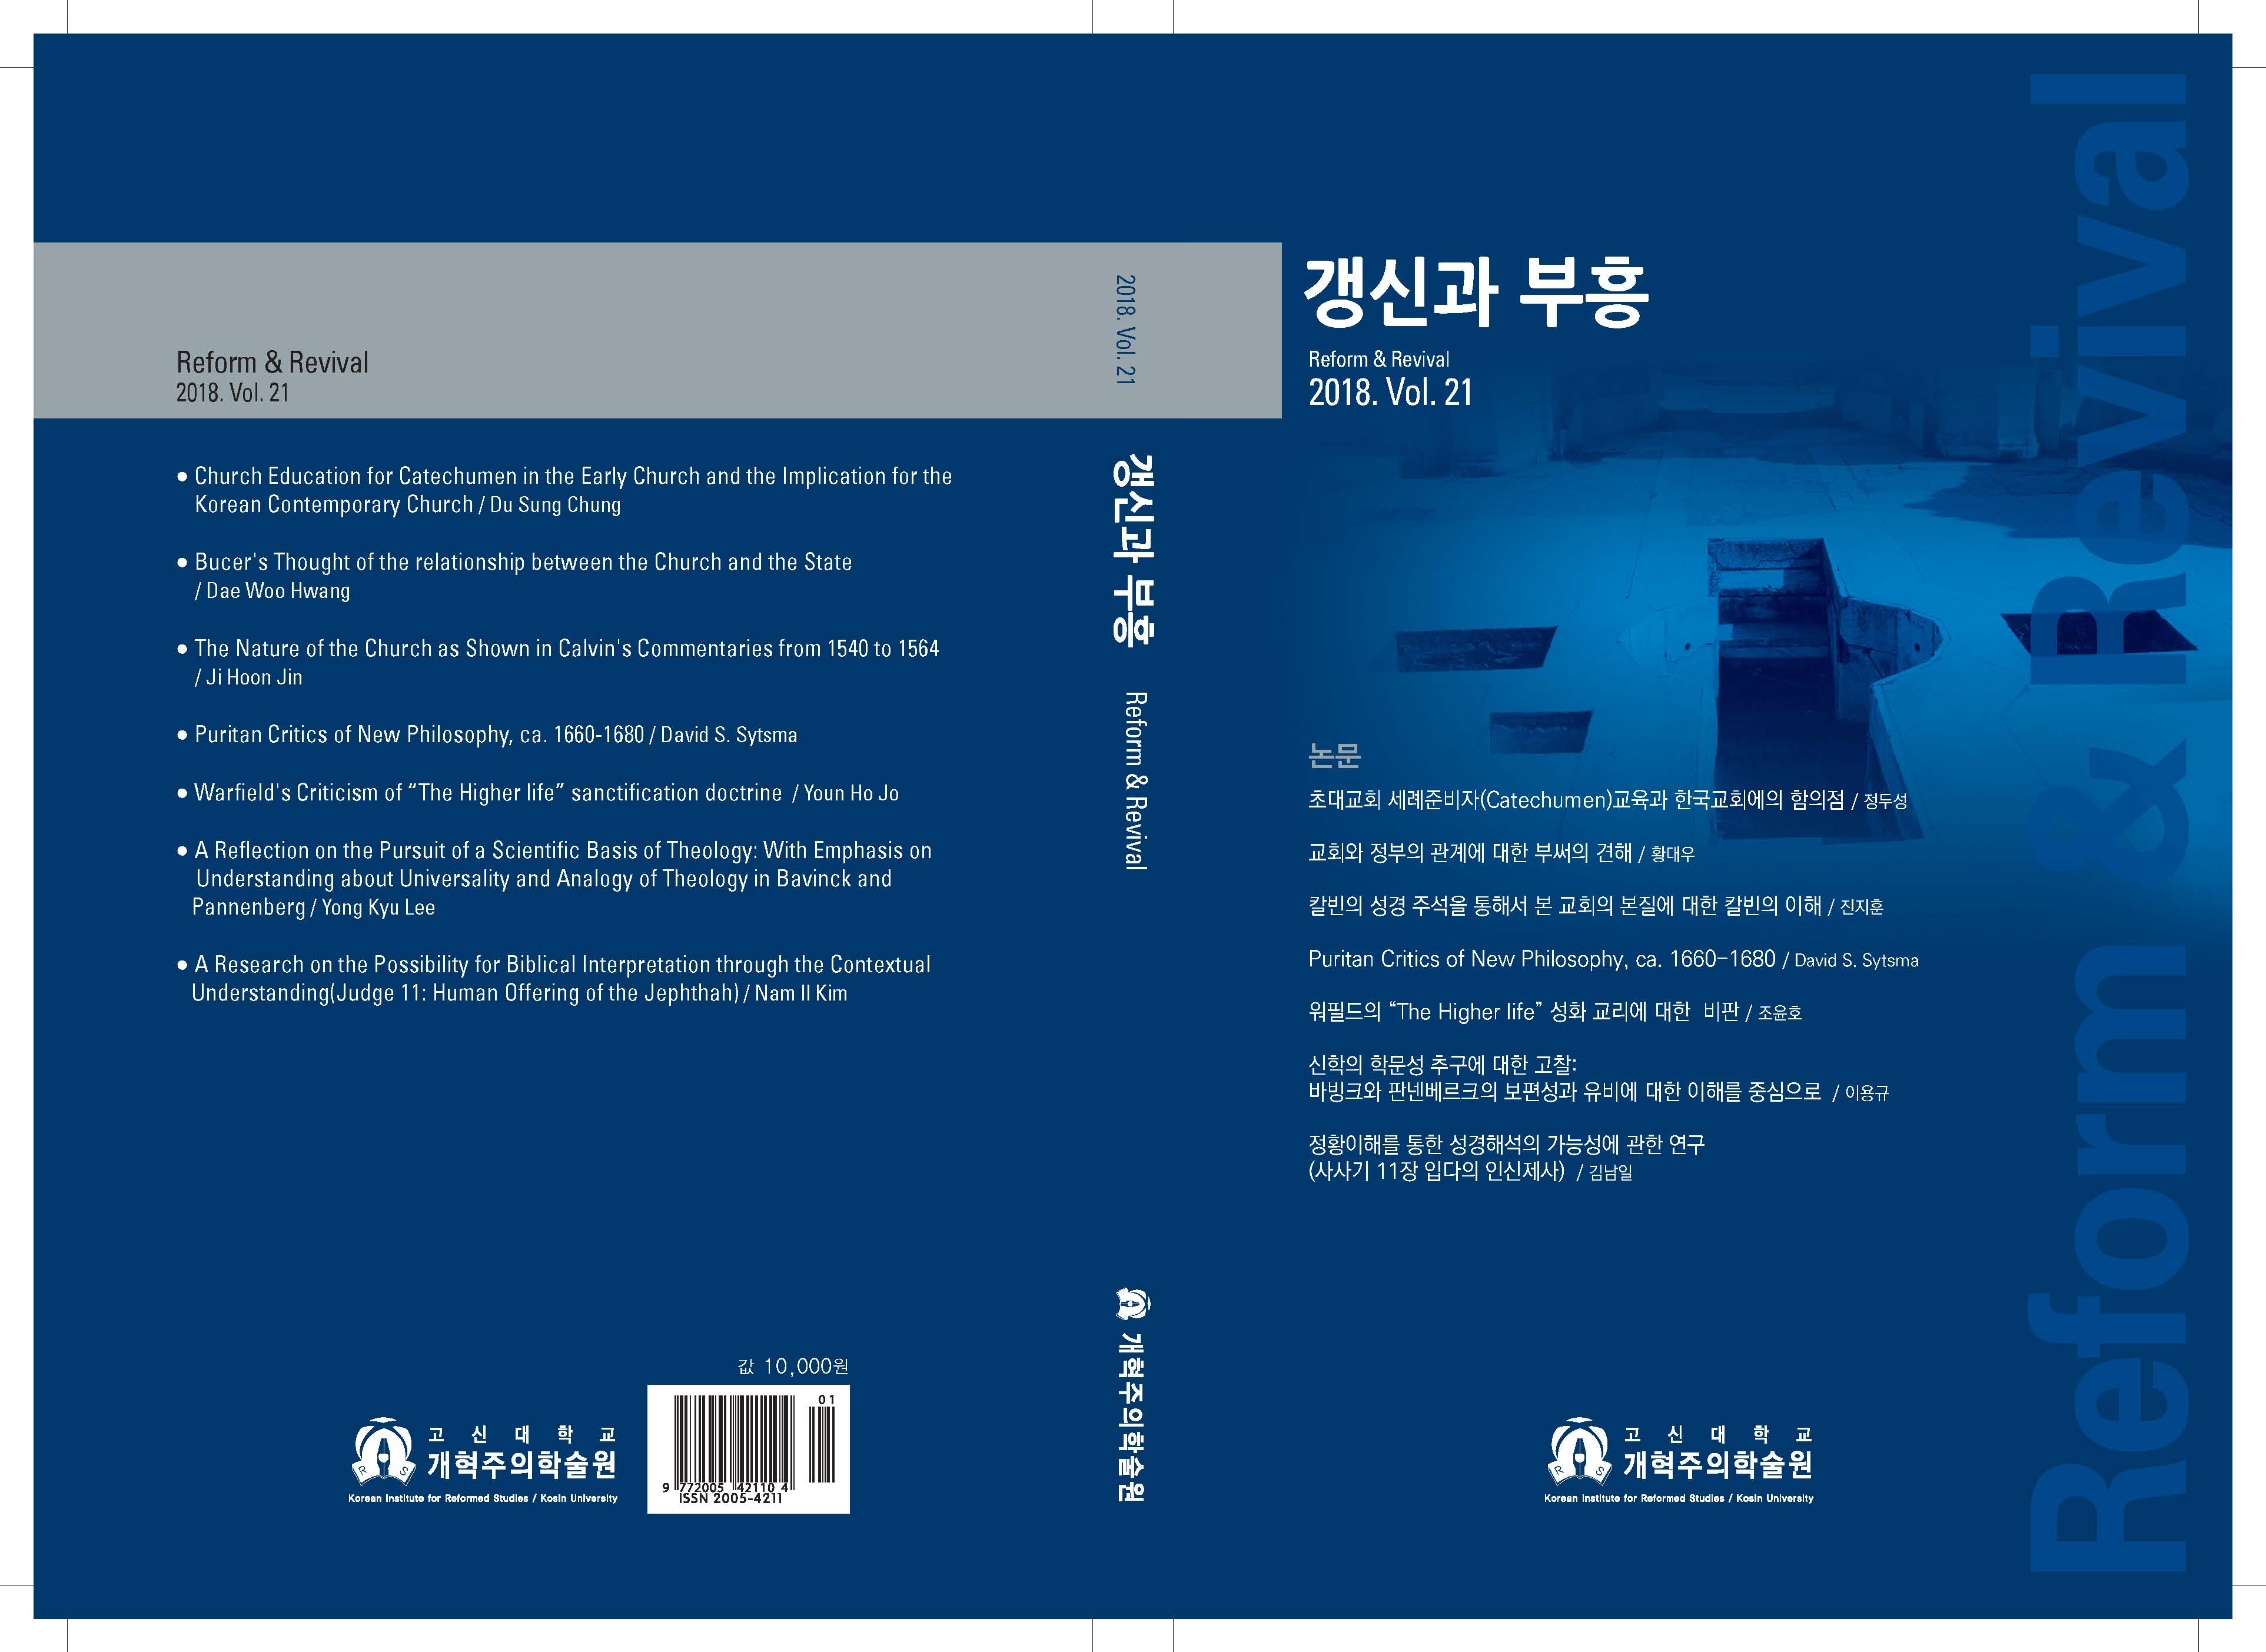 표지수정-갱신과부흥 Vol.21_Page_1.jpg